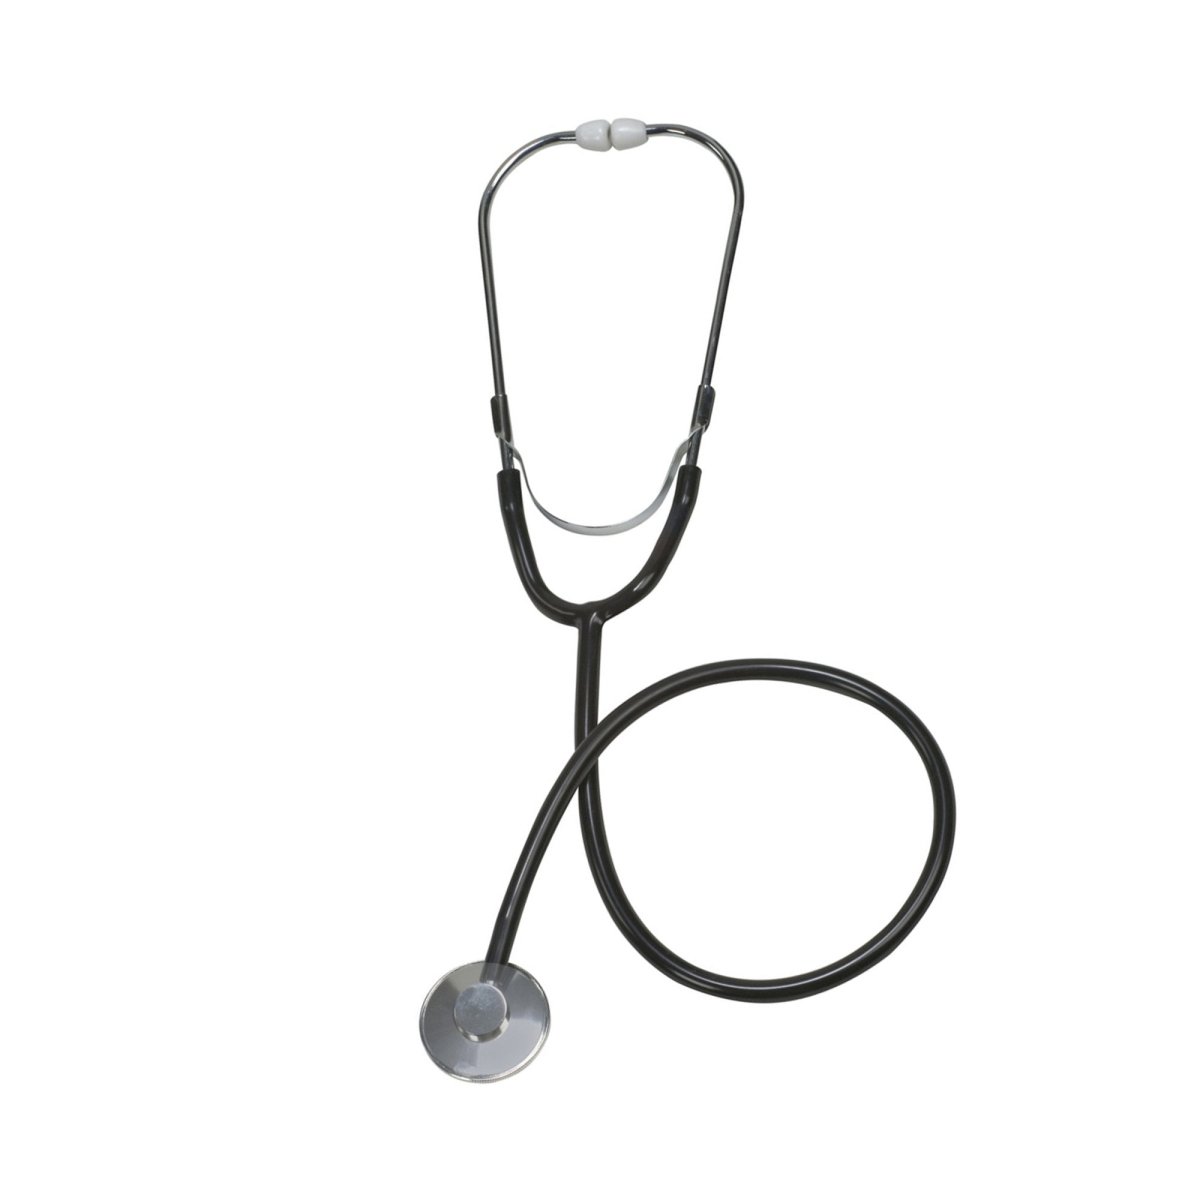 Mabis Spectrum Nurse Classic Stethoscope - 866470_EA - 1